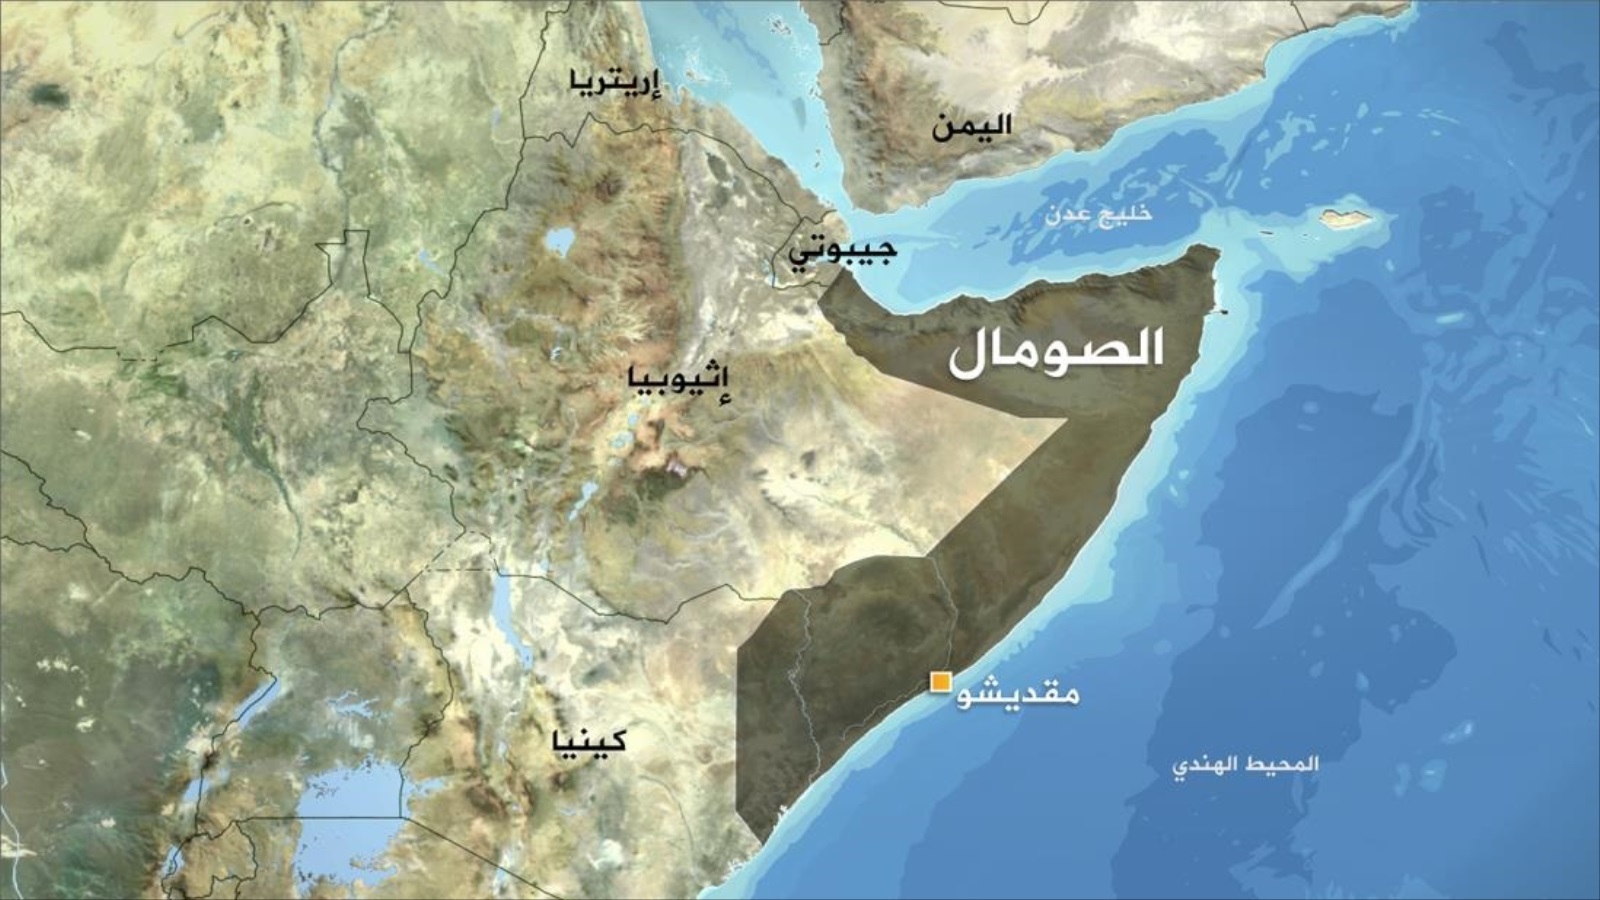 الصومال وبحكم موقعه الاستراتيجي وتمتعه بعلاقات وروابط جغرافية وتاريخية مشتركة مع الأمة العربية والإفريقية بإمكانه أن يكون نقطة التقاء وانصهار العلاقتين العربية والأفريقية